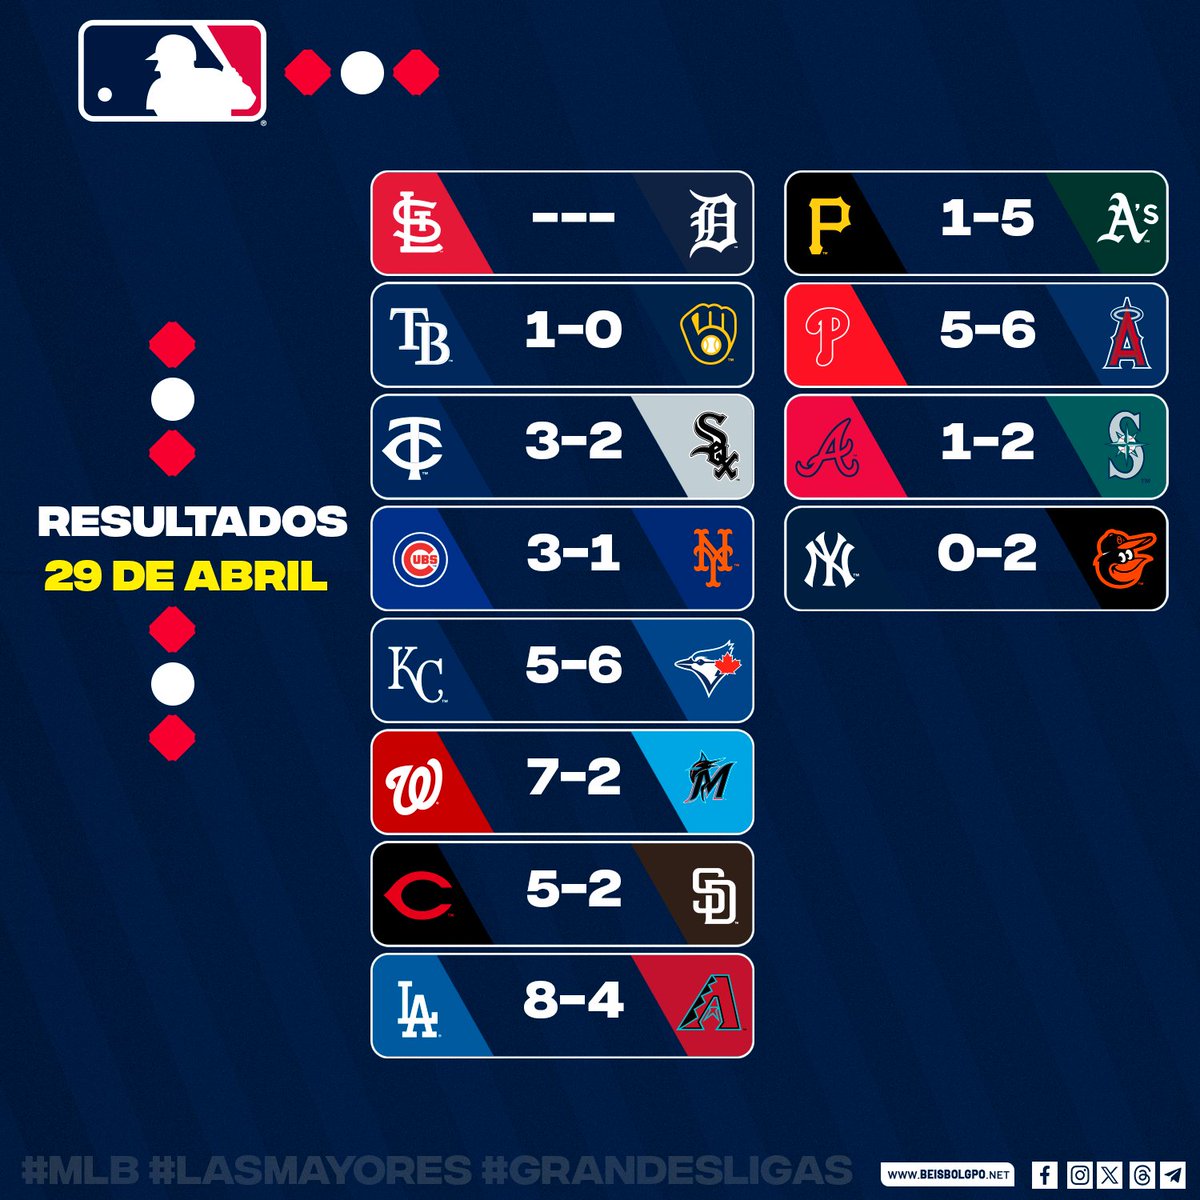 #MLB || Así han finalizado los juegos de este 29 de abril en #GrandesLigas

#Beisbol #Nicaragua